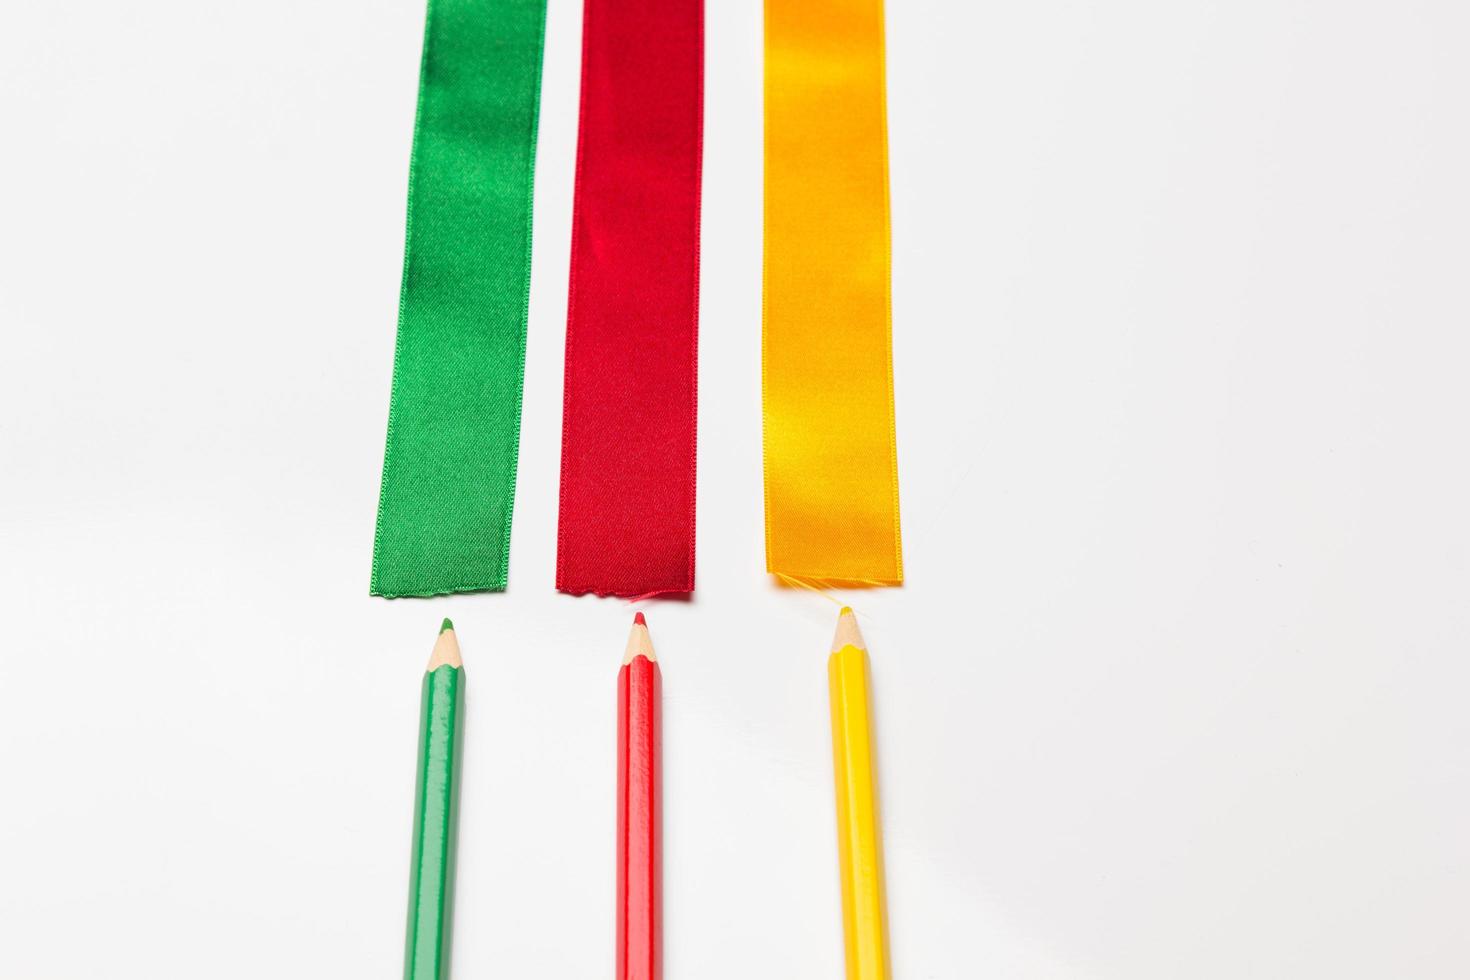 färgpennor insvept i ett grönt band foto